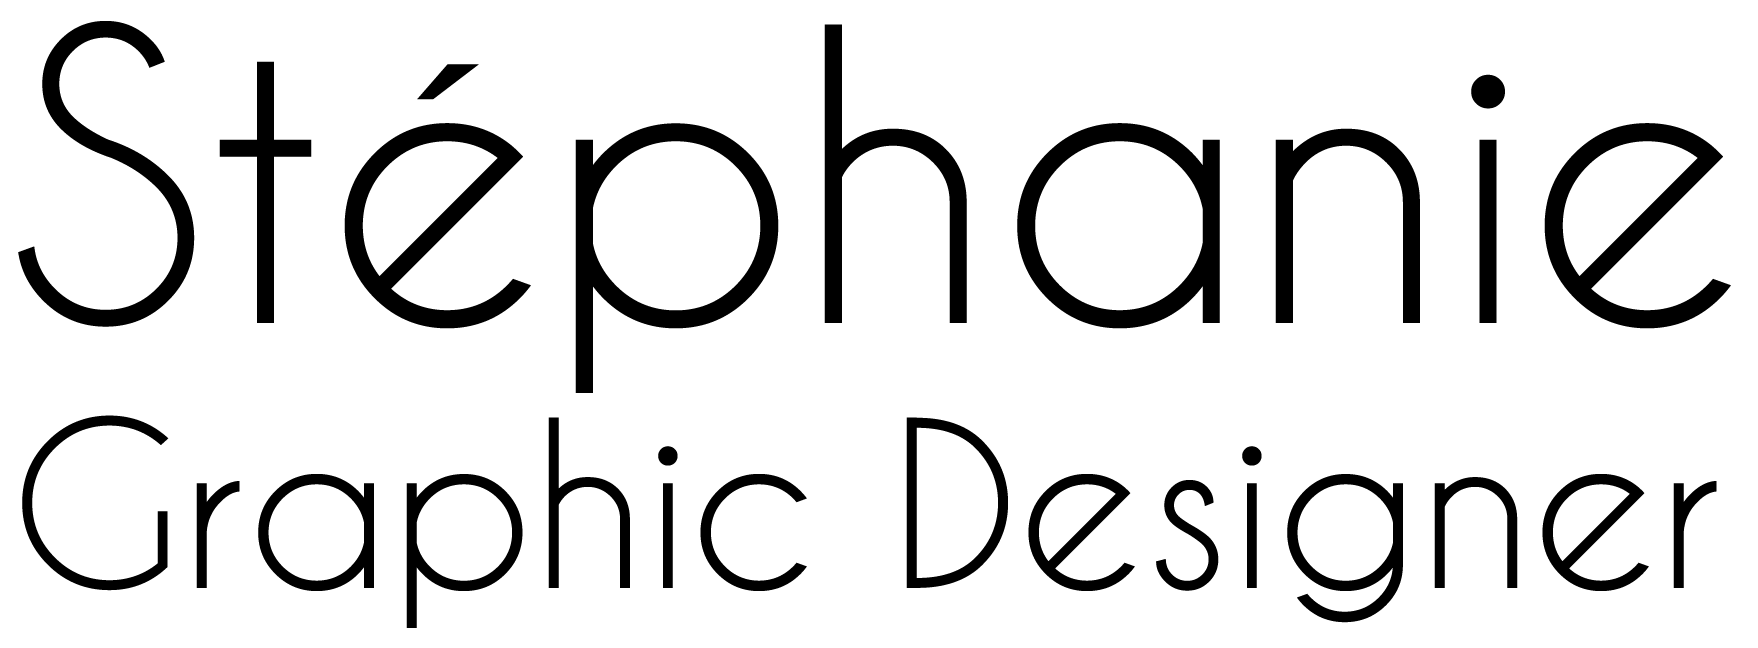 Stephanie Logo - LogoDix